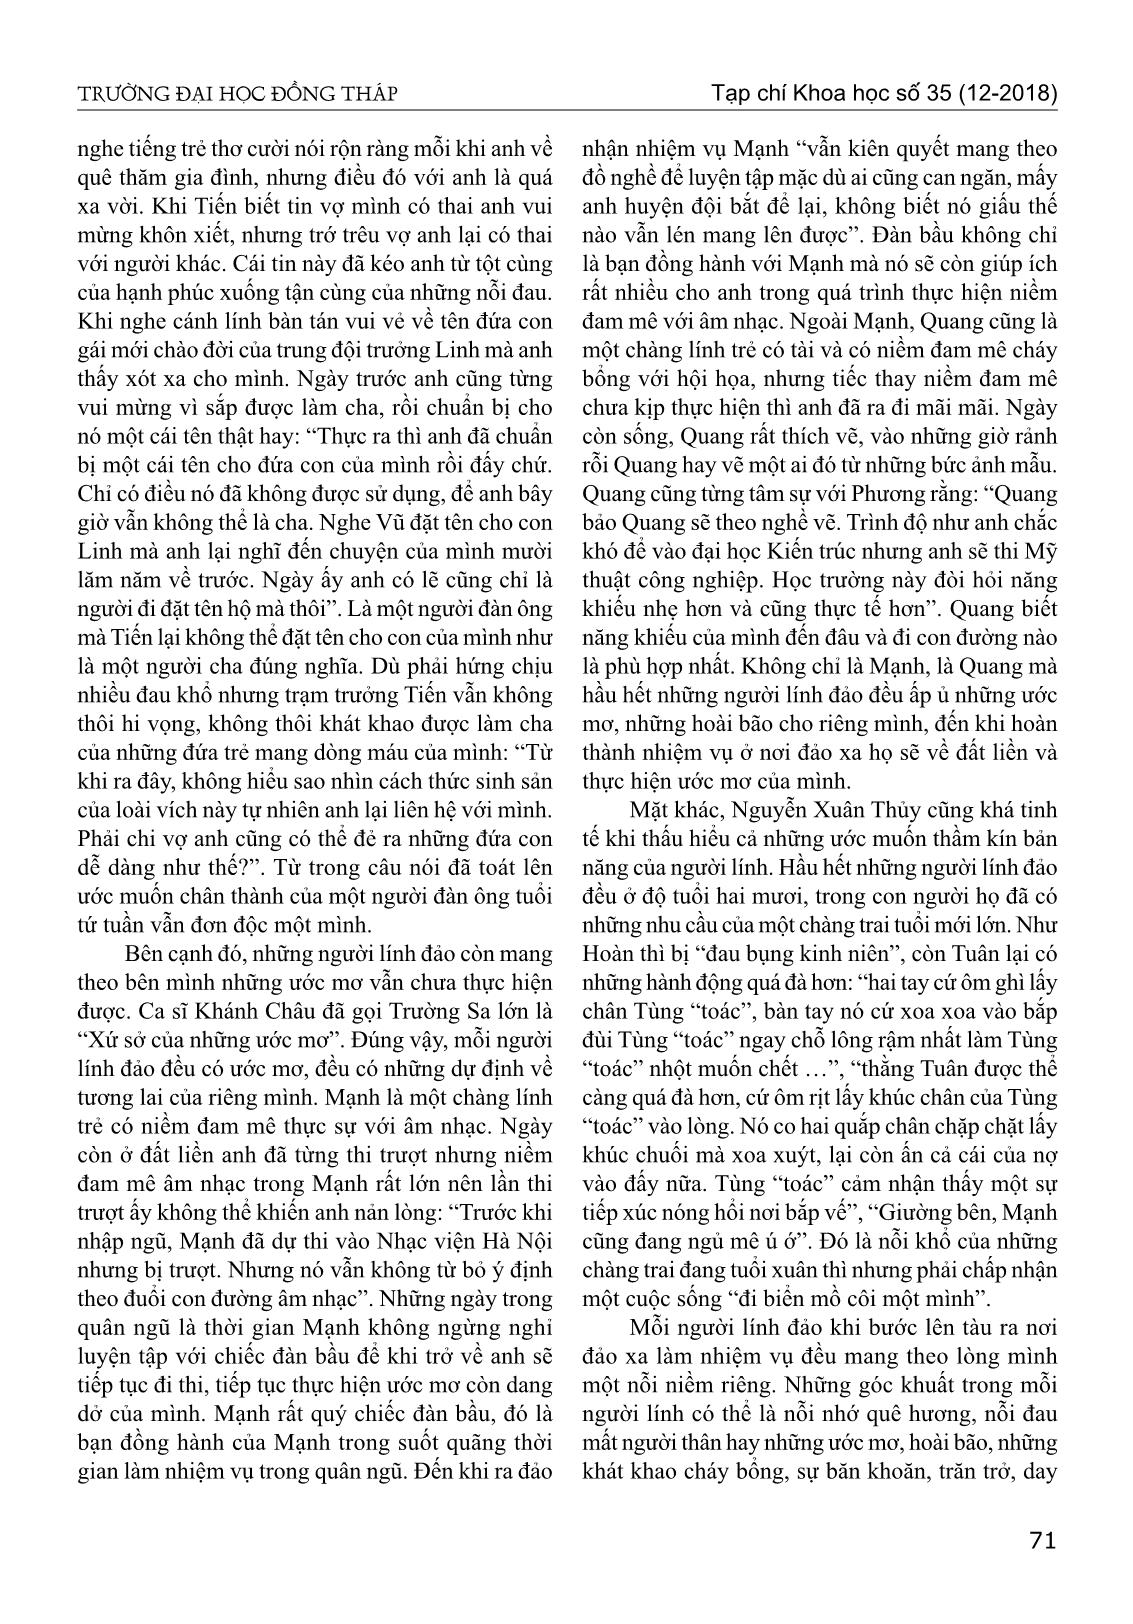 Chân dung người lính biển trong tiểu thuyết biển xanh màu lá của Nguyễn Xuân Thủy trang 8